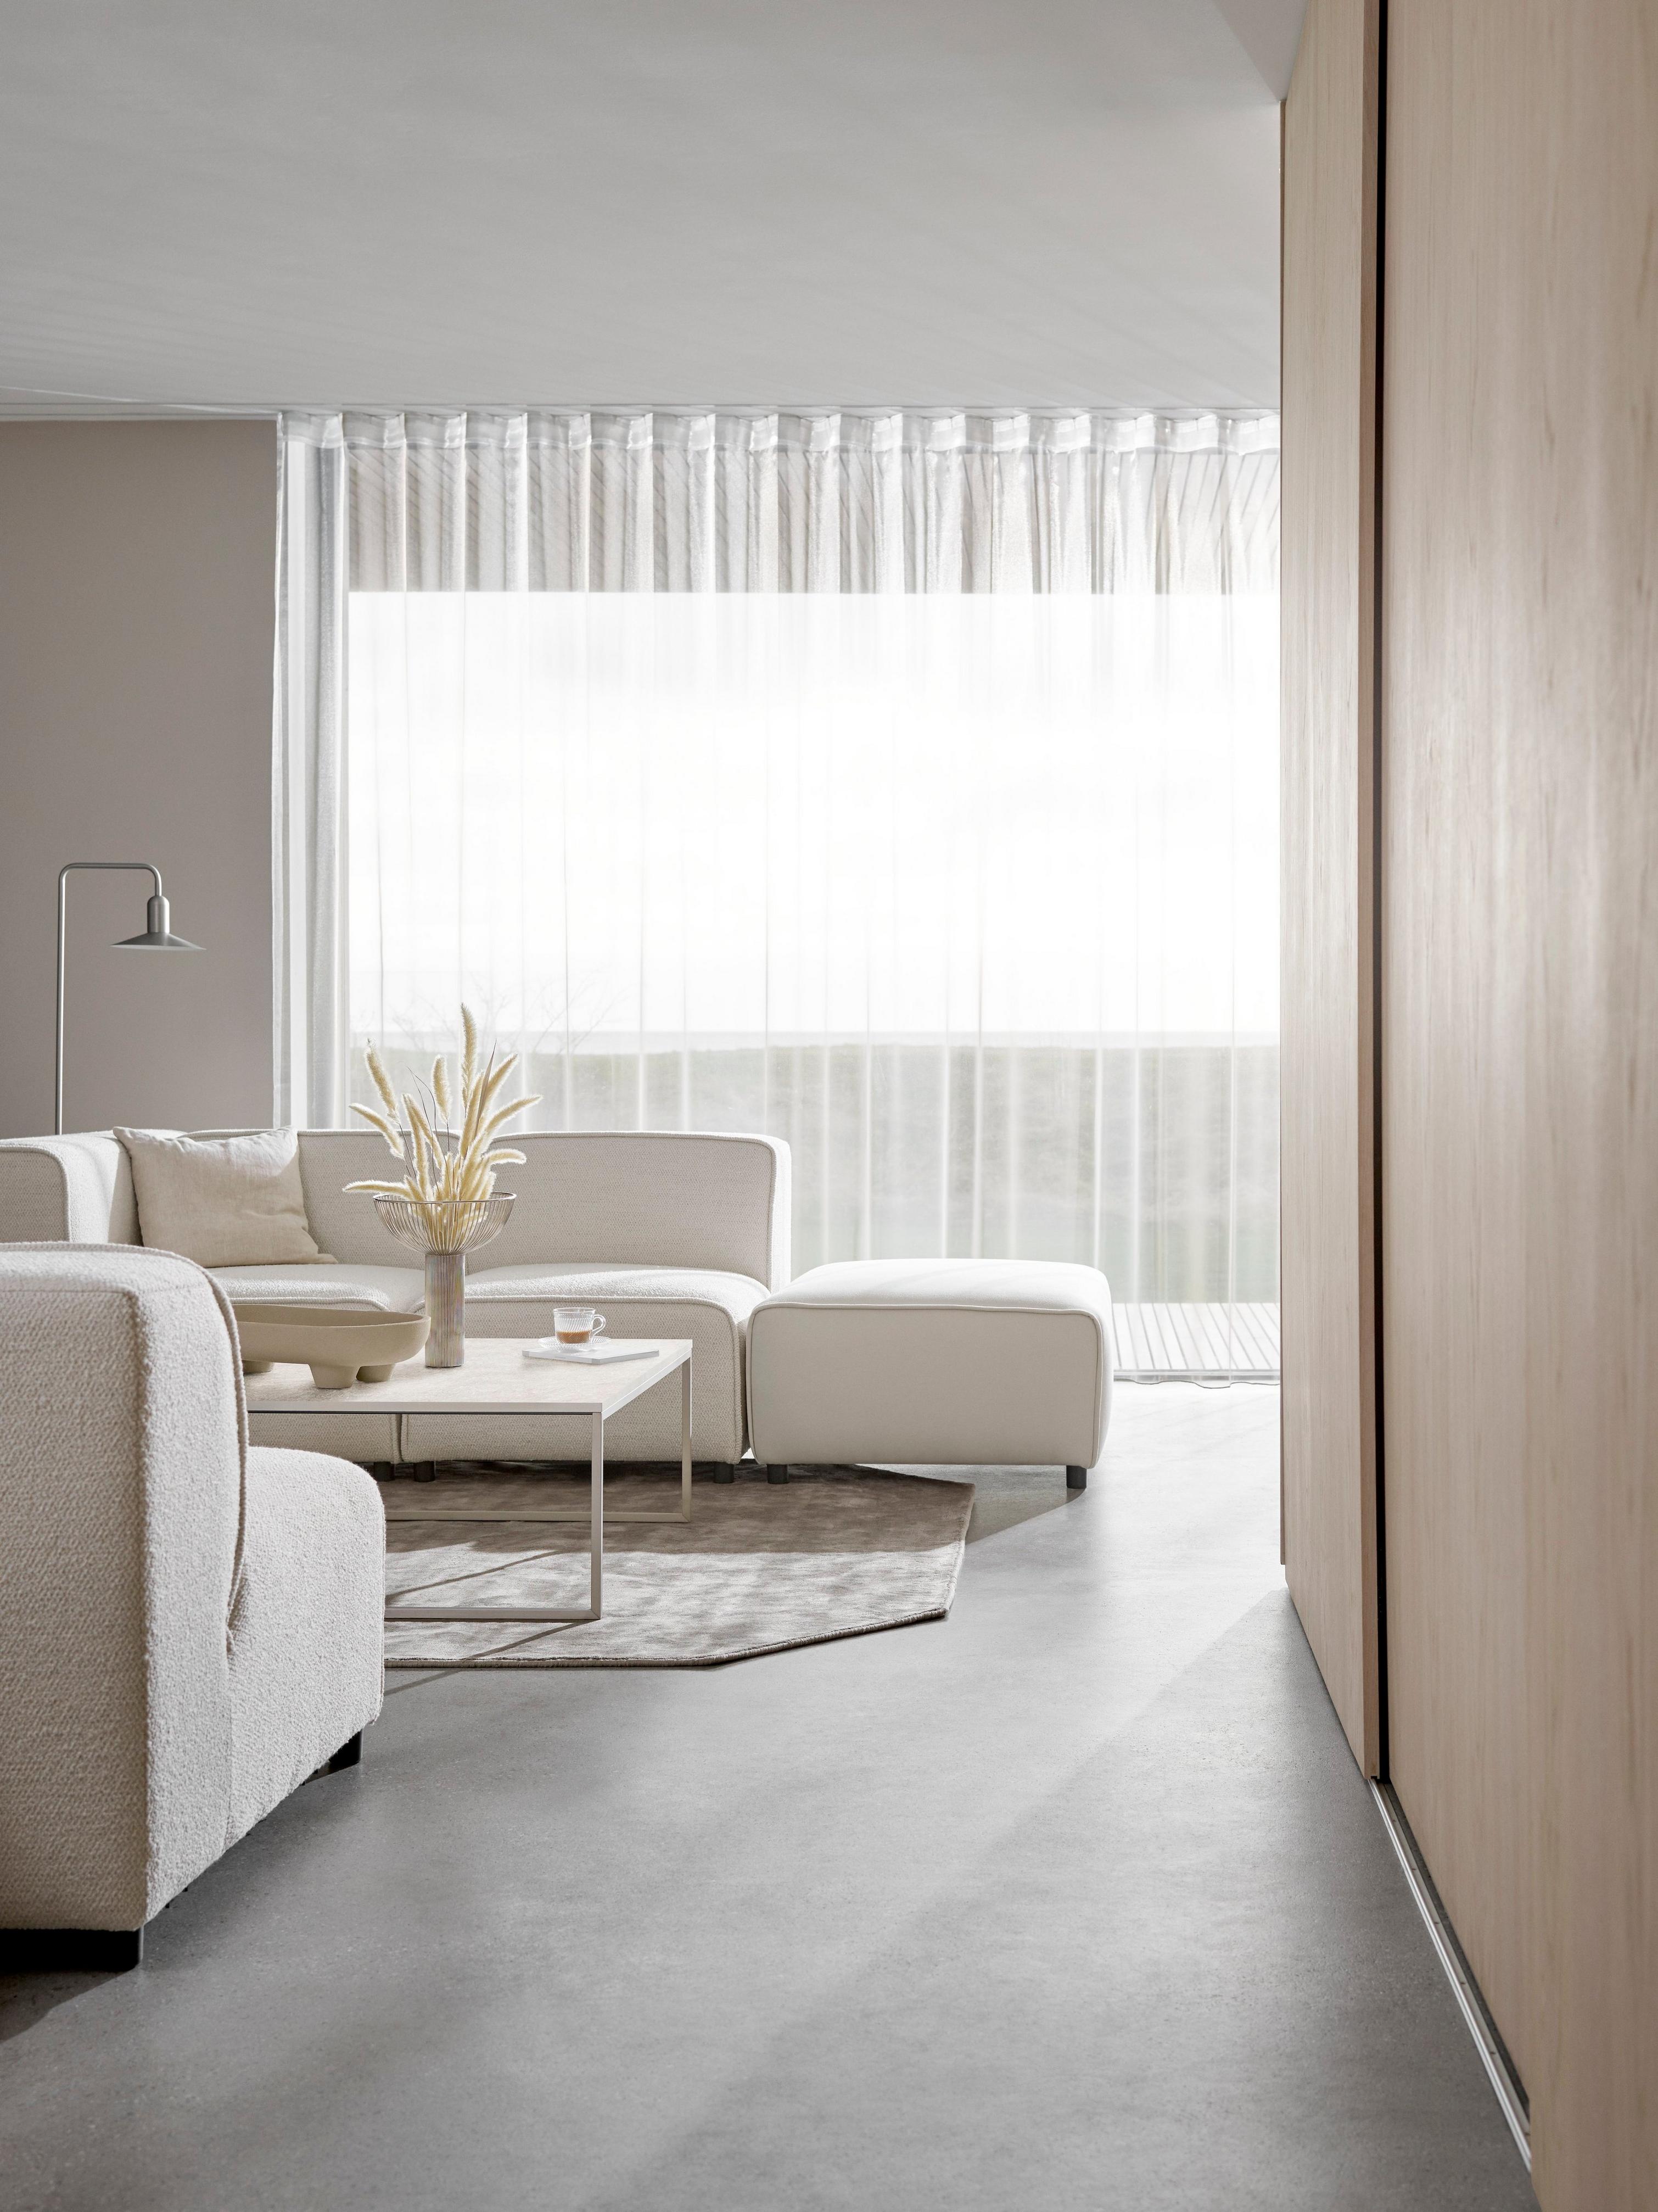 Canapé Carmo couleur crème dans un salon minimaliste, avec des rideaux transparents laissant passer la lumière.